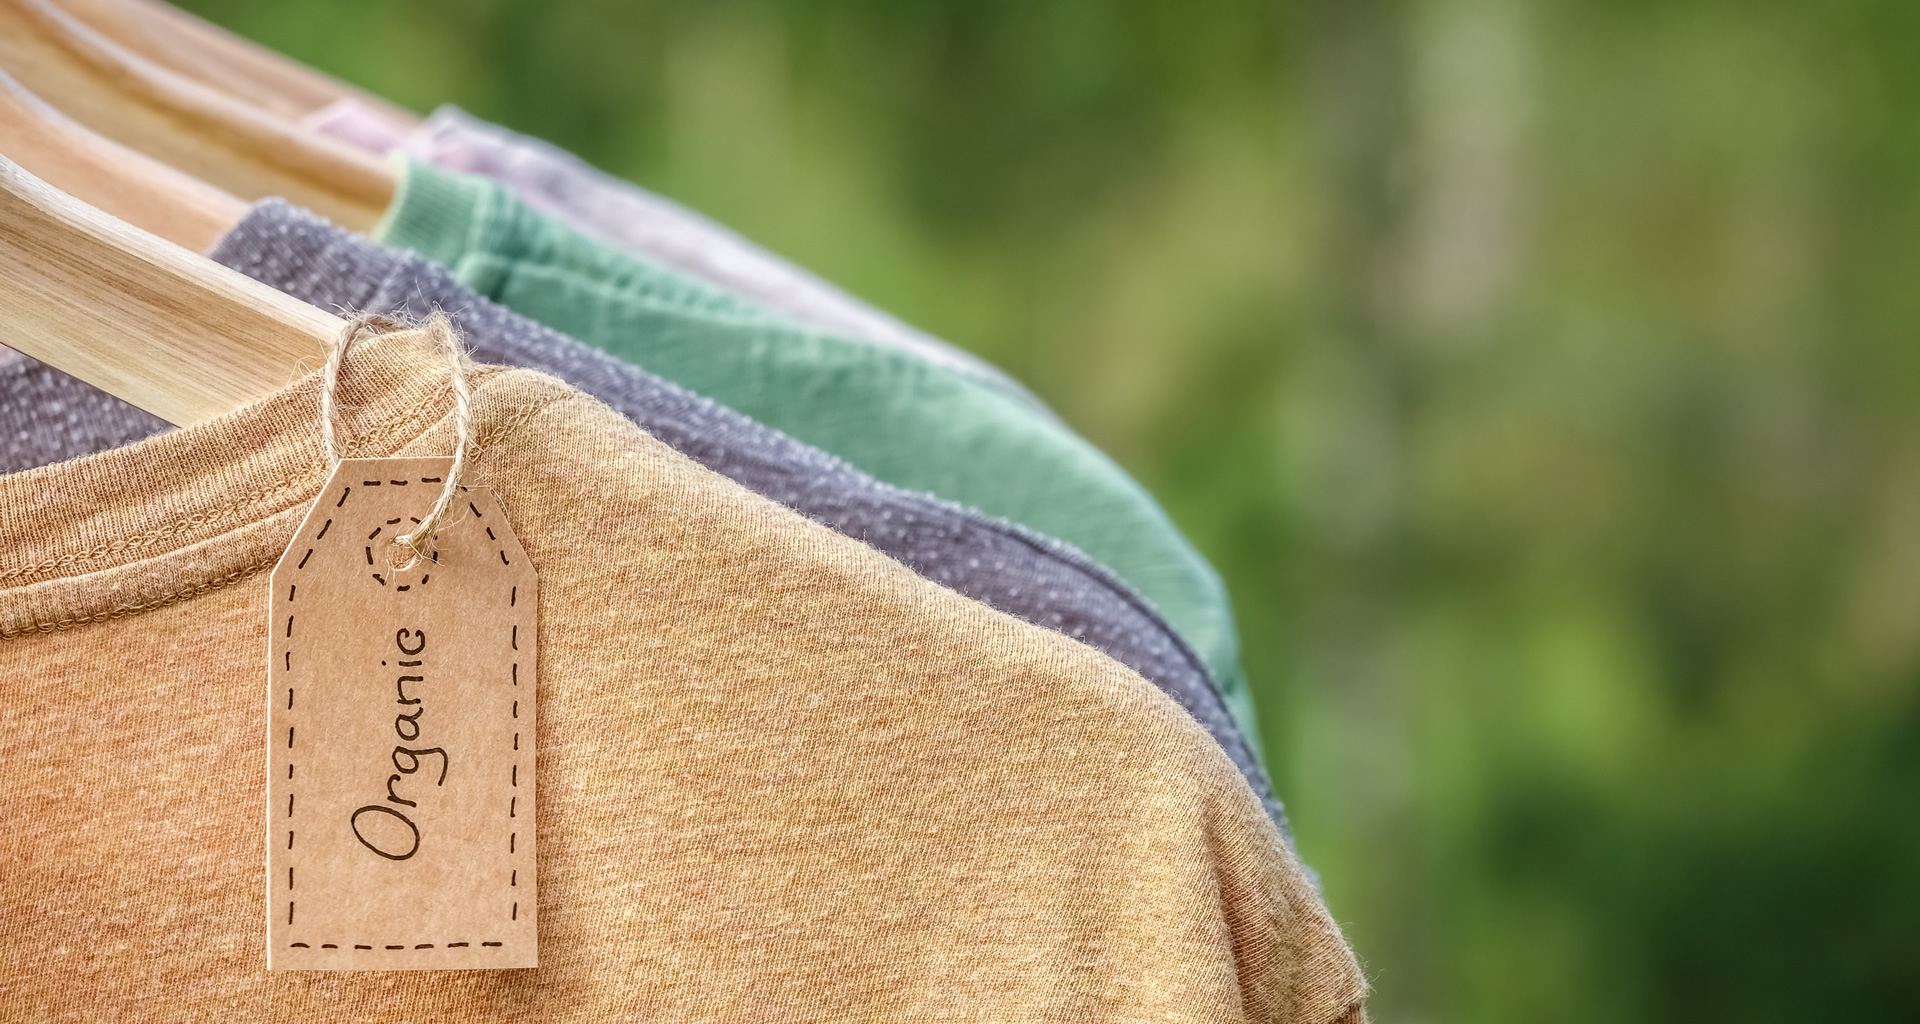 Peregrination Adviseur Het is goedkoop Ecovriendelijk textiel : Labels van bio kledij